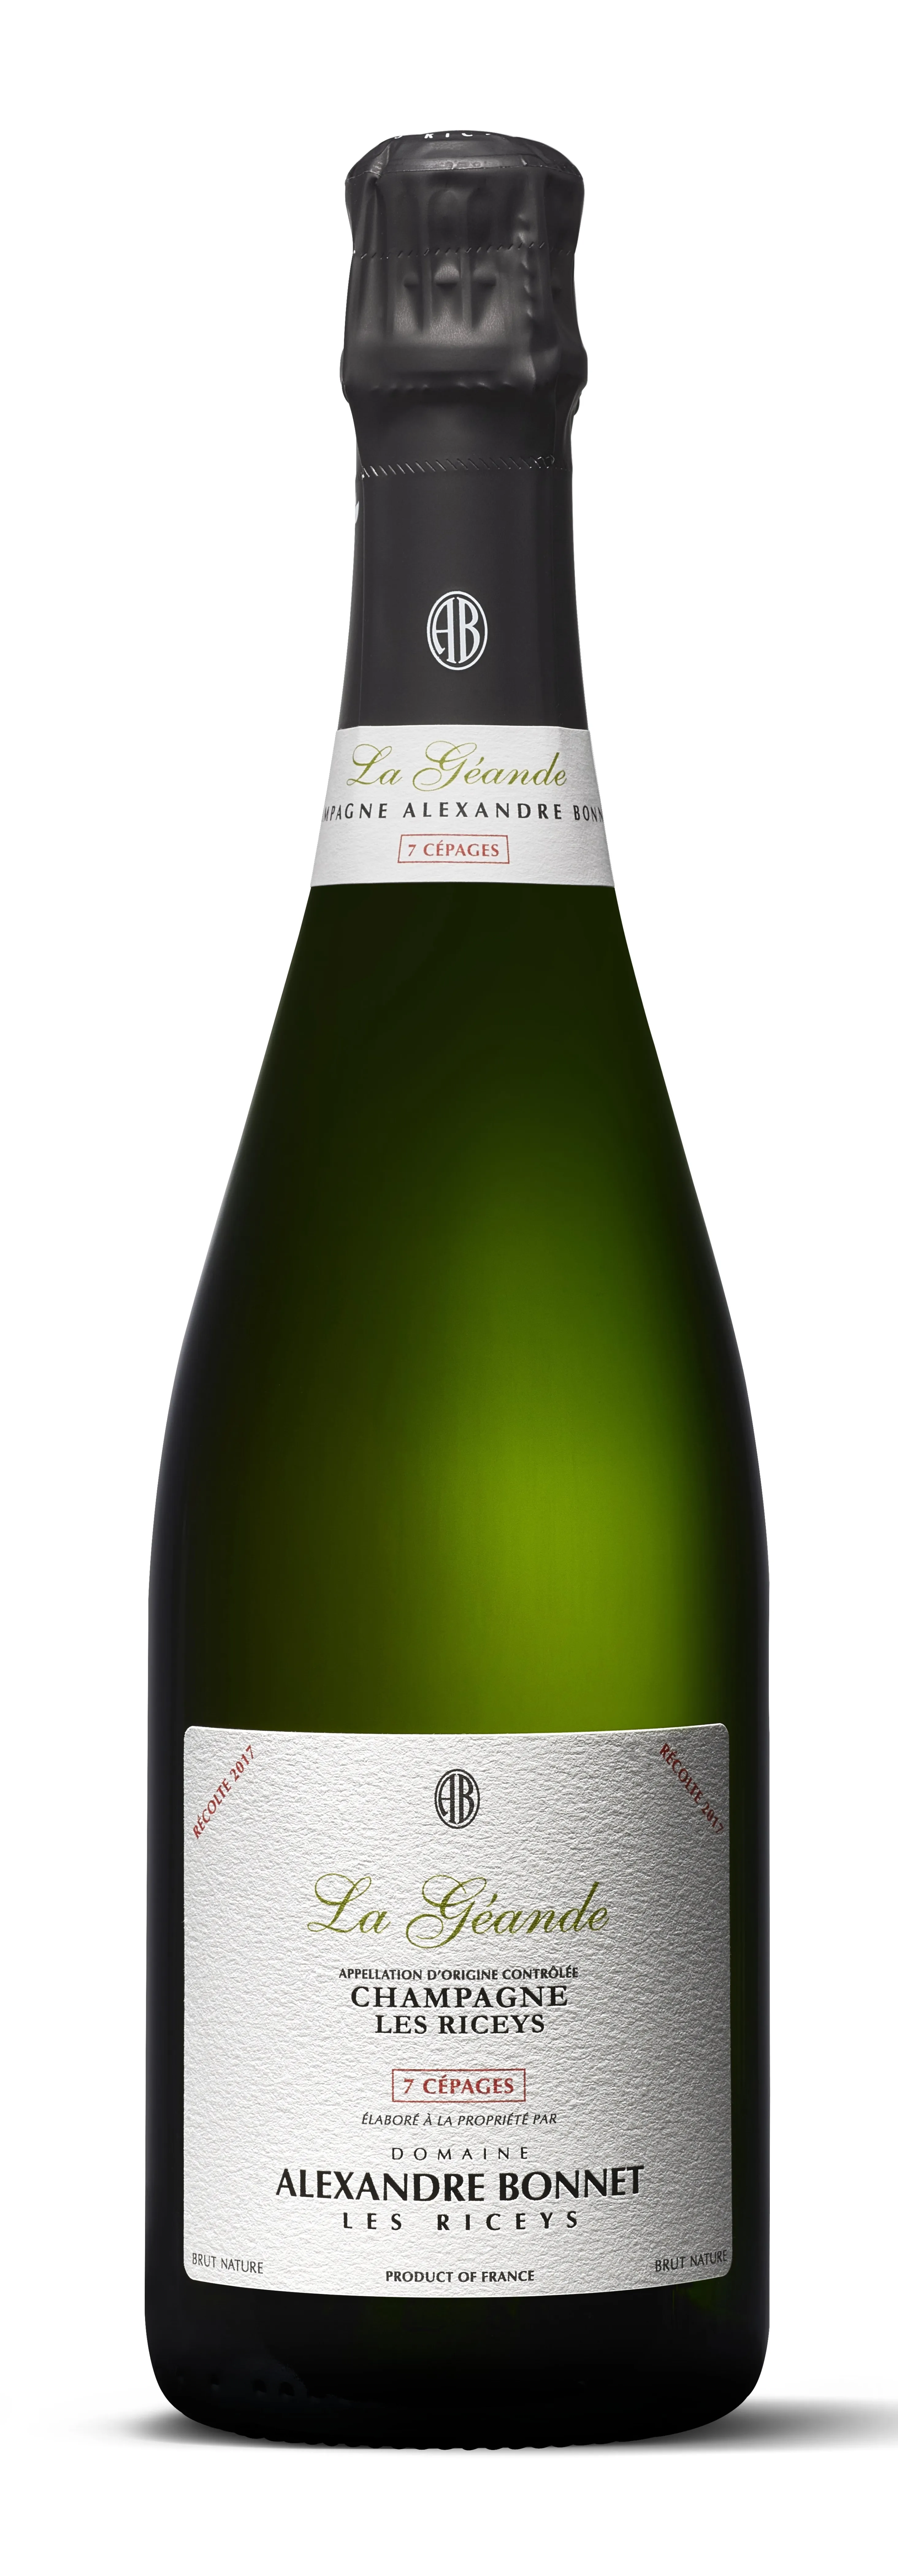 Bottle of Alexandre Bonnet La Géande 7 Cépages Brut Nature Champagne from search results